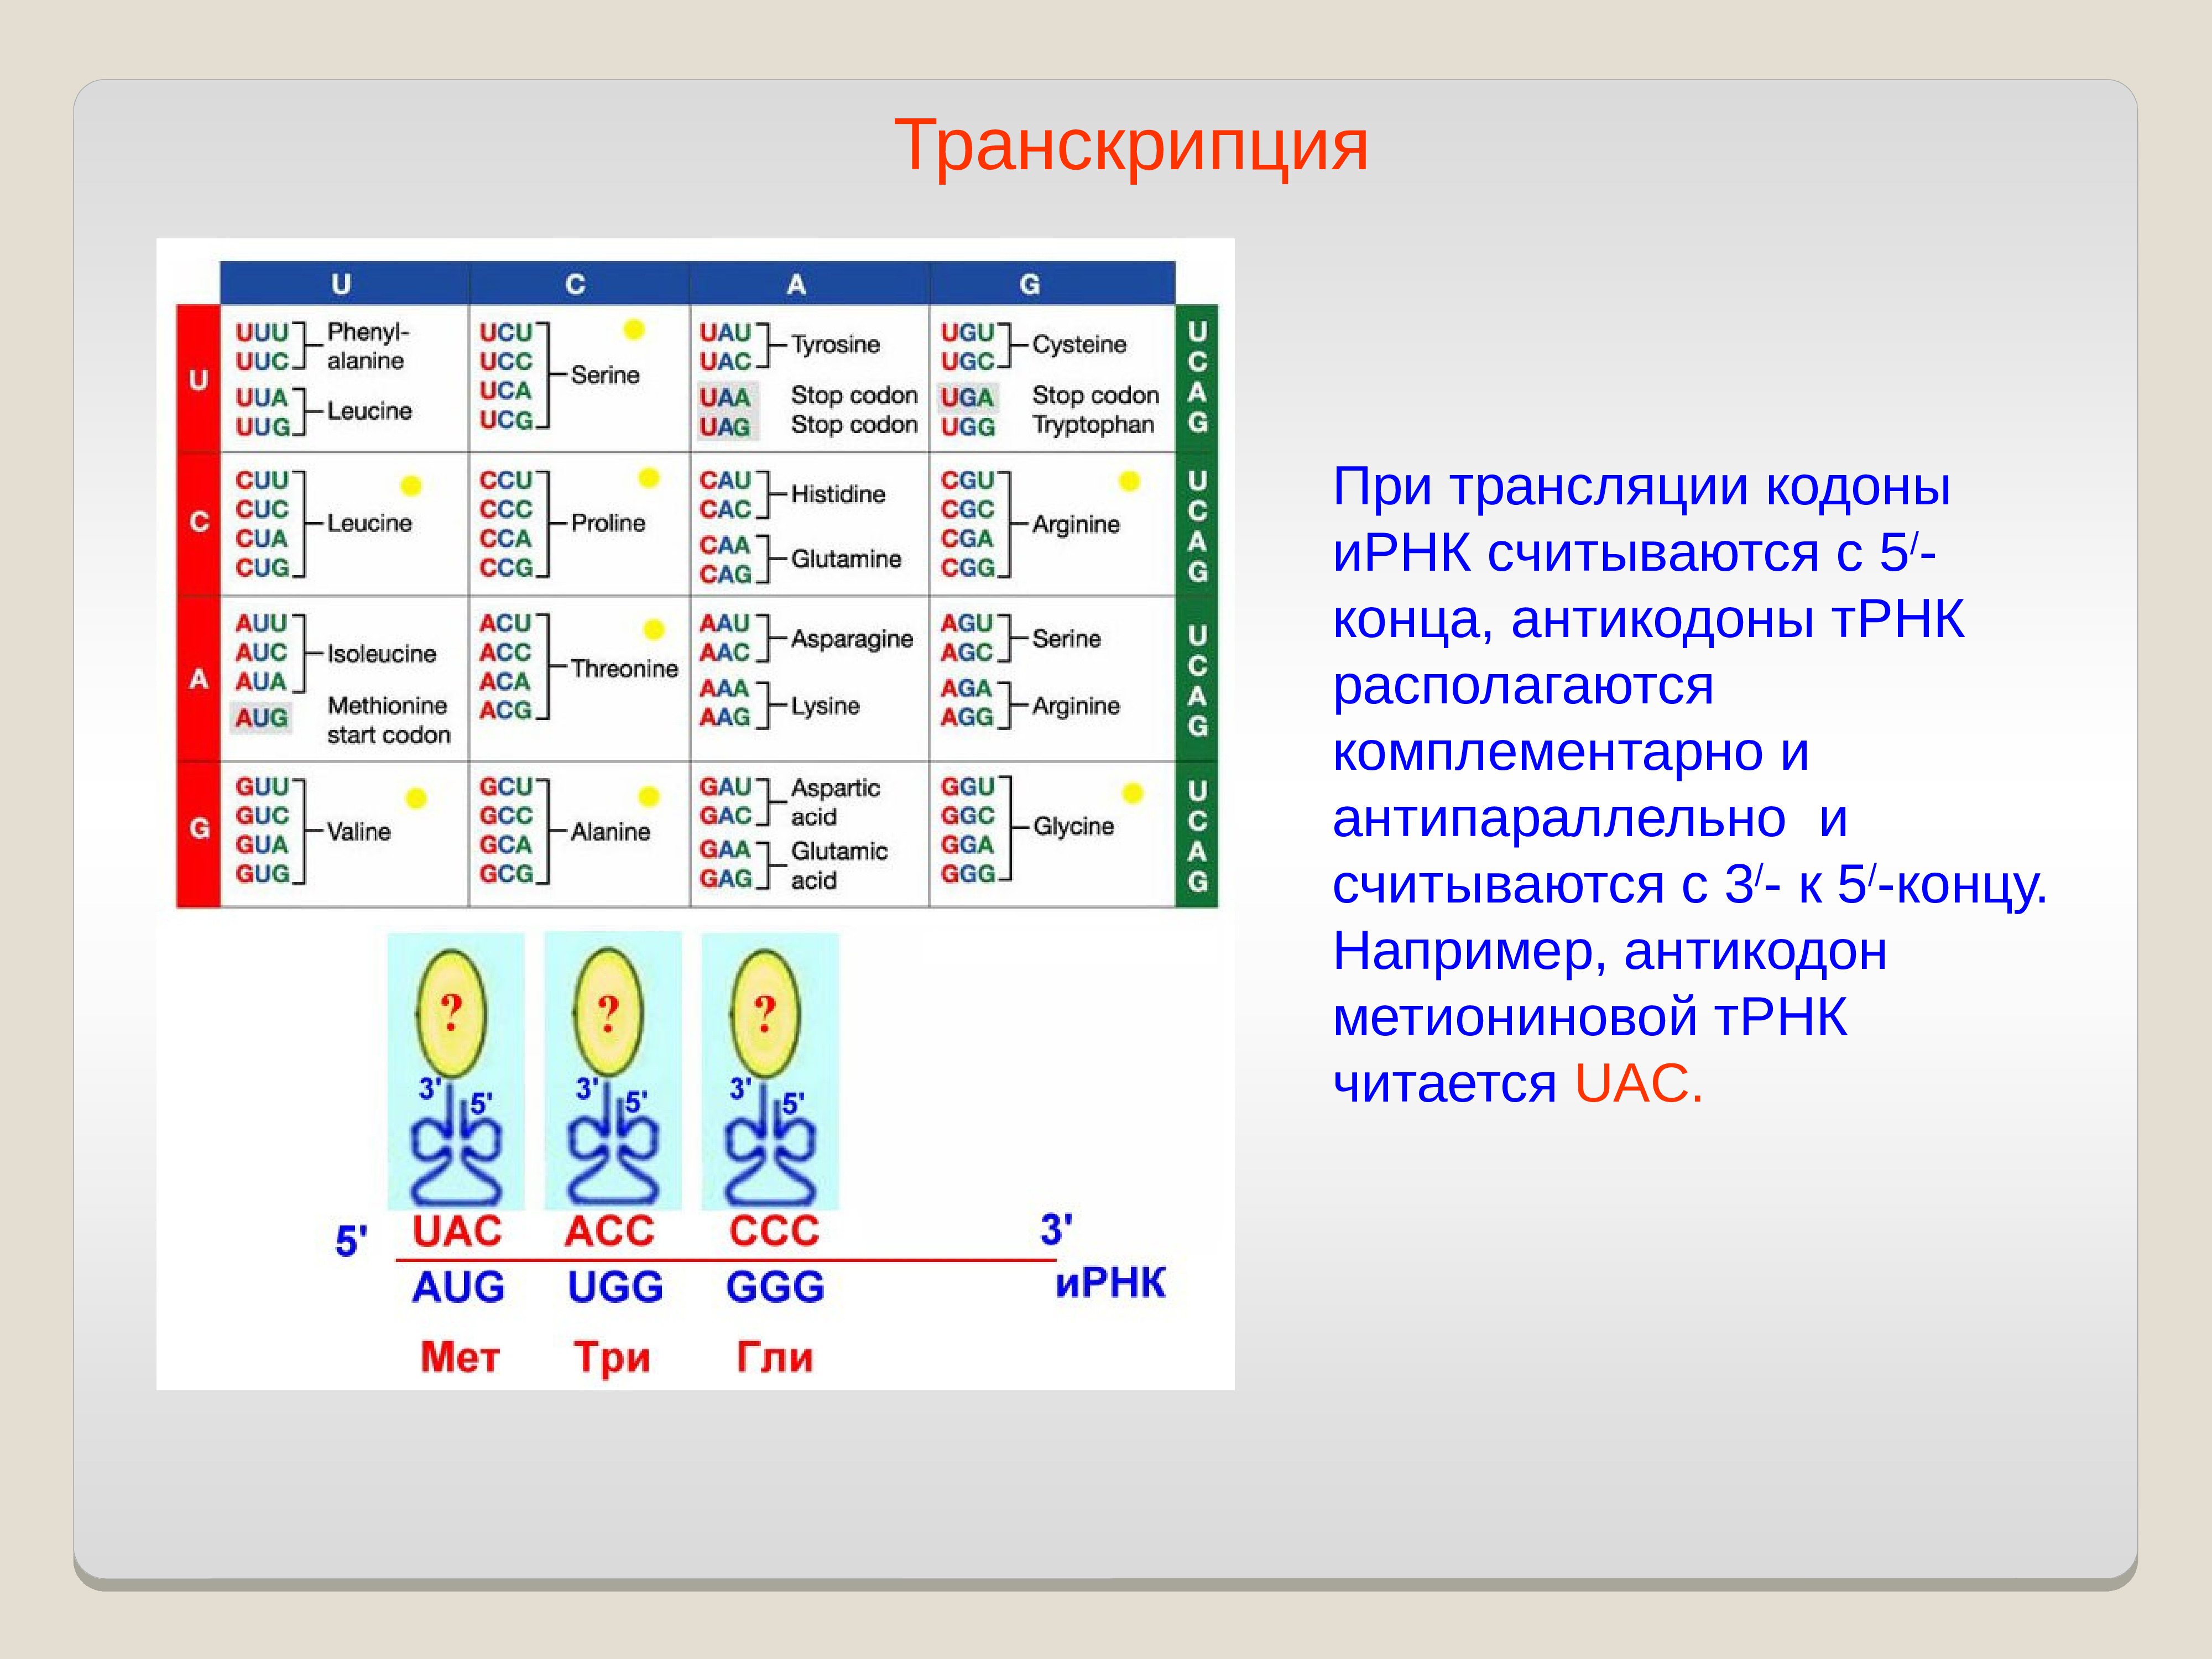 Кодоны ИРНК И антикодоны ТРНК